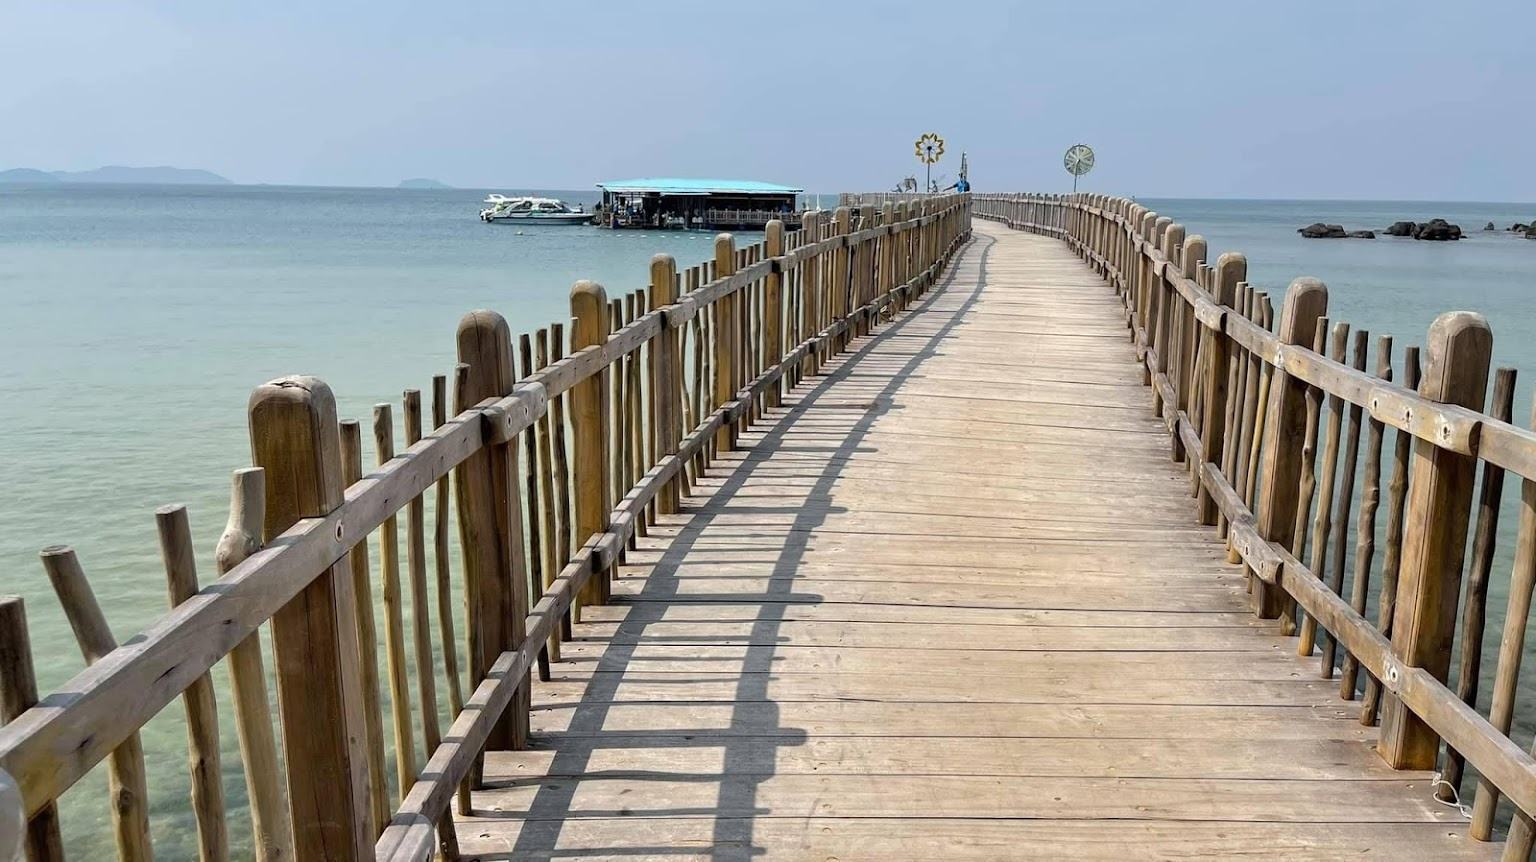 Hình ảnh cây cầu gỗ trên đảo Phú Quốc